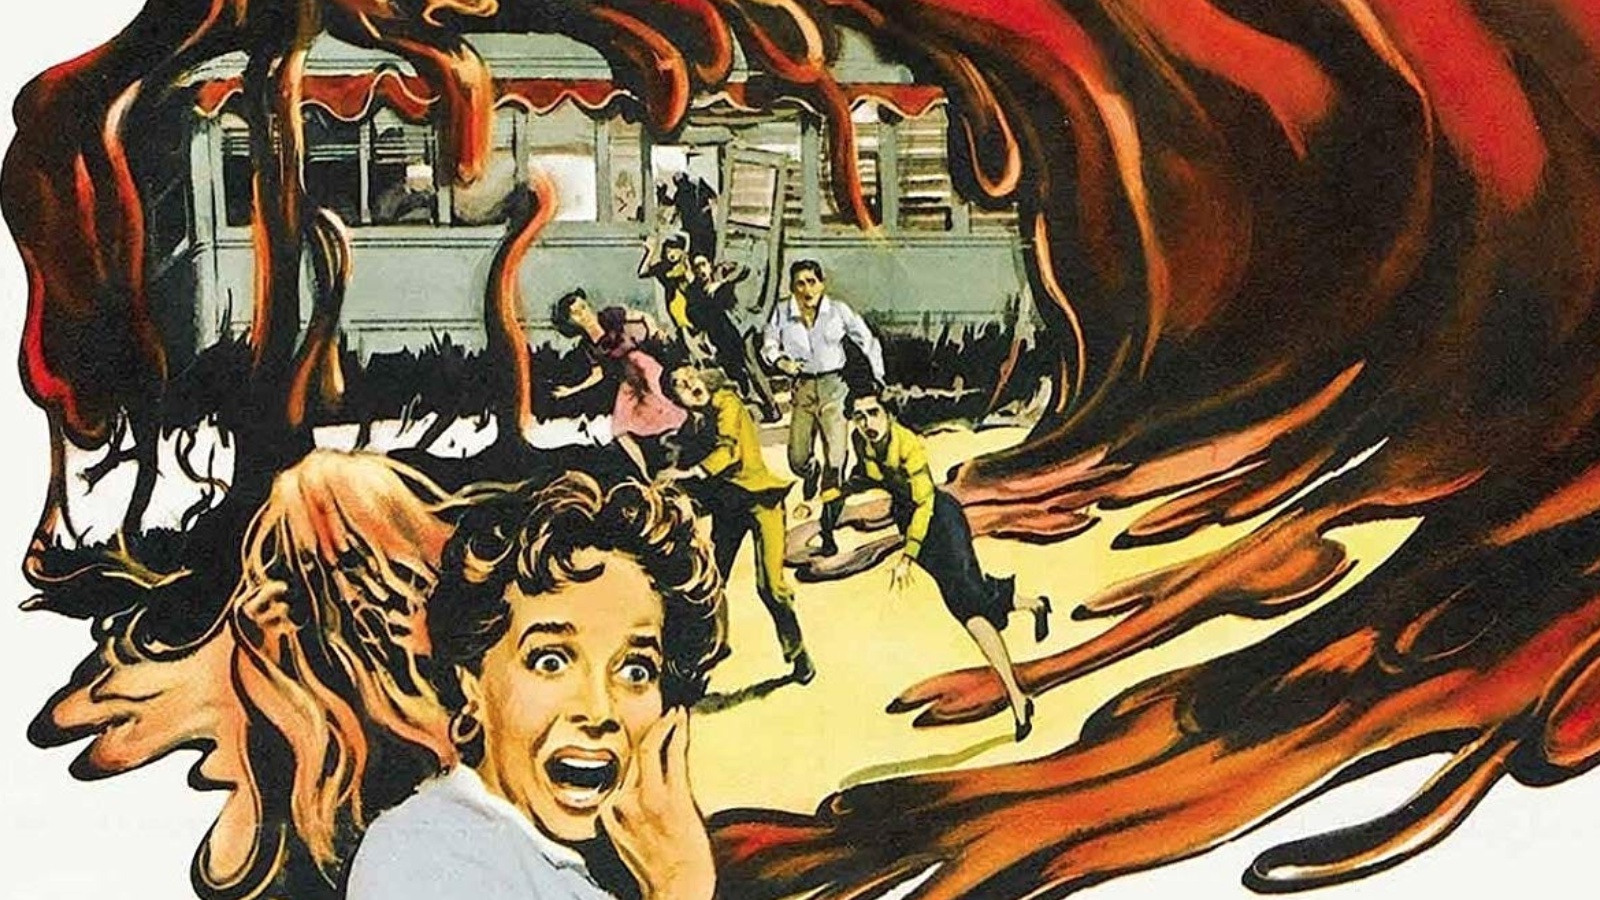 Blob - Fluido mortale: il remake del classico horror è in sviluppo presso Warner Bros.